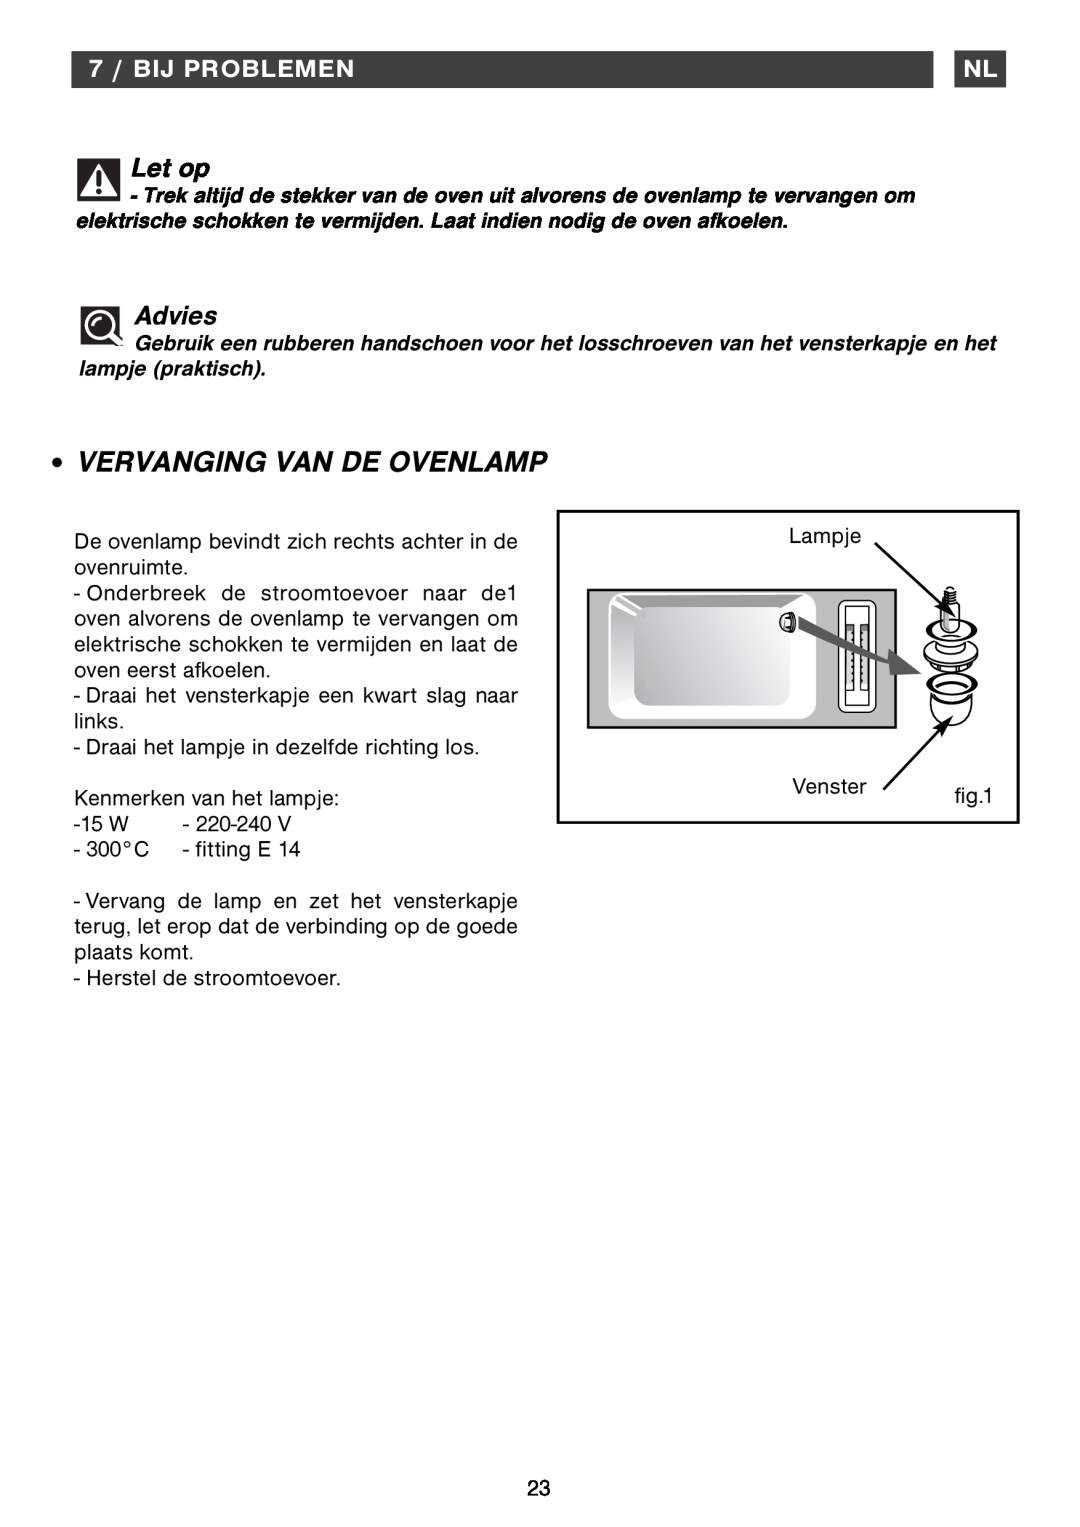 Smeg Four Oven manual Vervanging Van De Ovenlamp, 7 / BIJ PROBLEMEN, Let op, Advies 